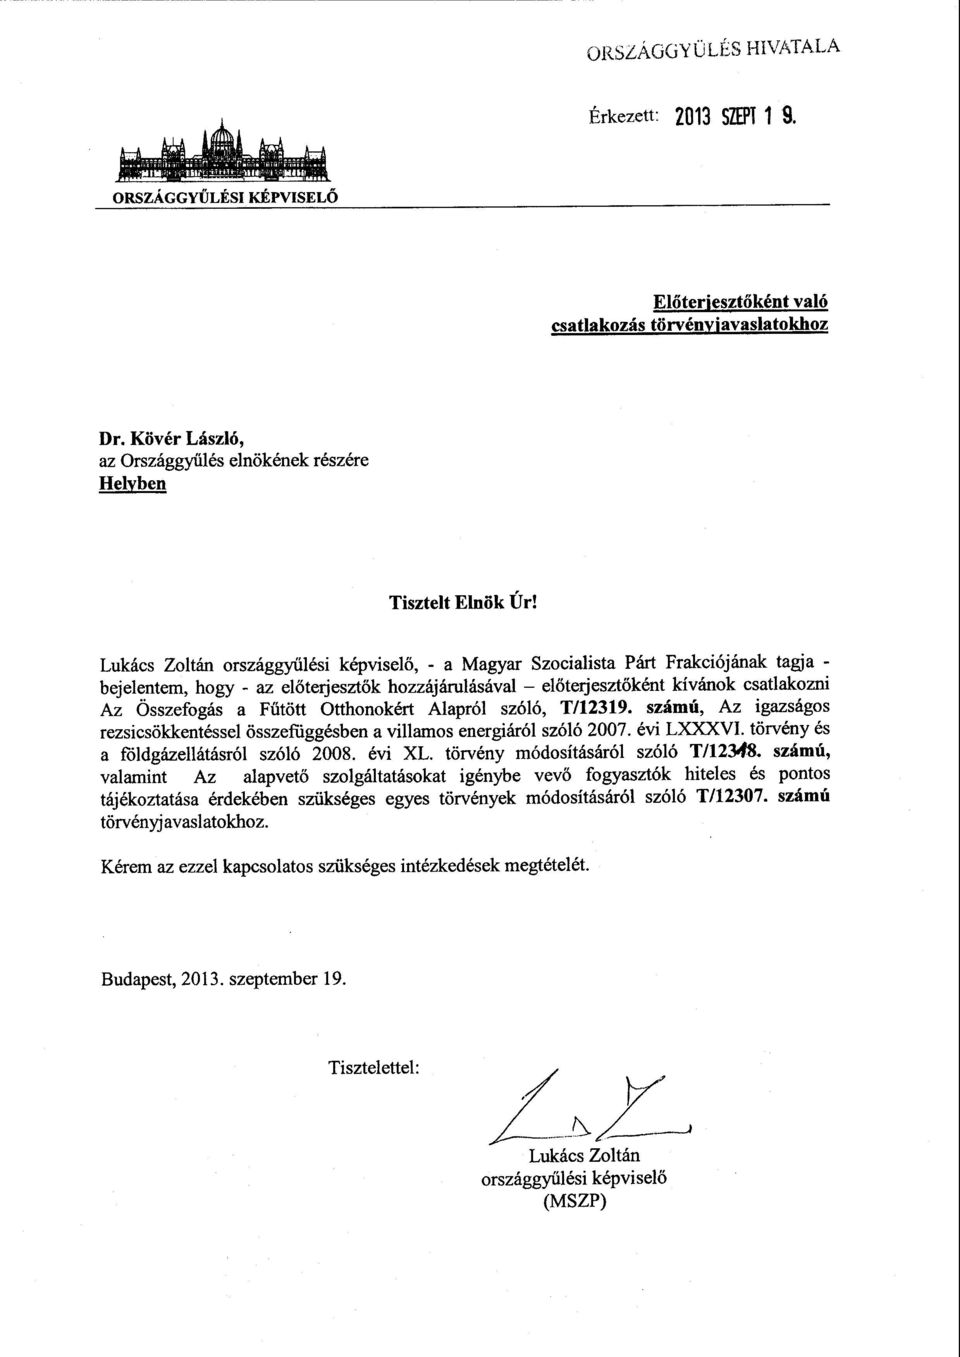 Lukács Zoltán országgyűlési képviselő, - a Magyar Szocialista Párt Frakciójának tagja - bejelentem, hogy - az el őterjeszt ők hozzájárulásával el őterjesztőként kívánok csatlakozni Az Összefogás a